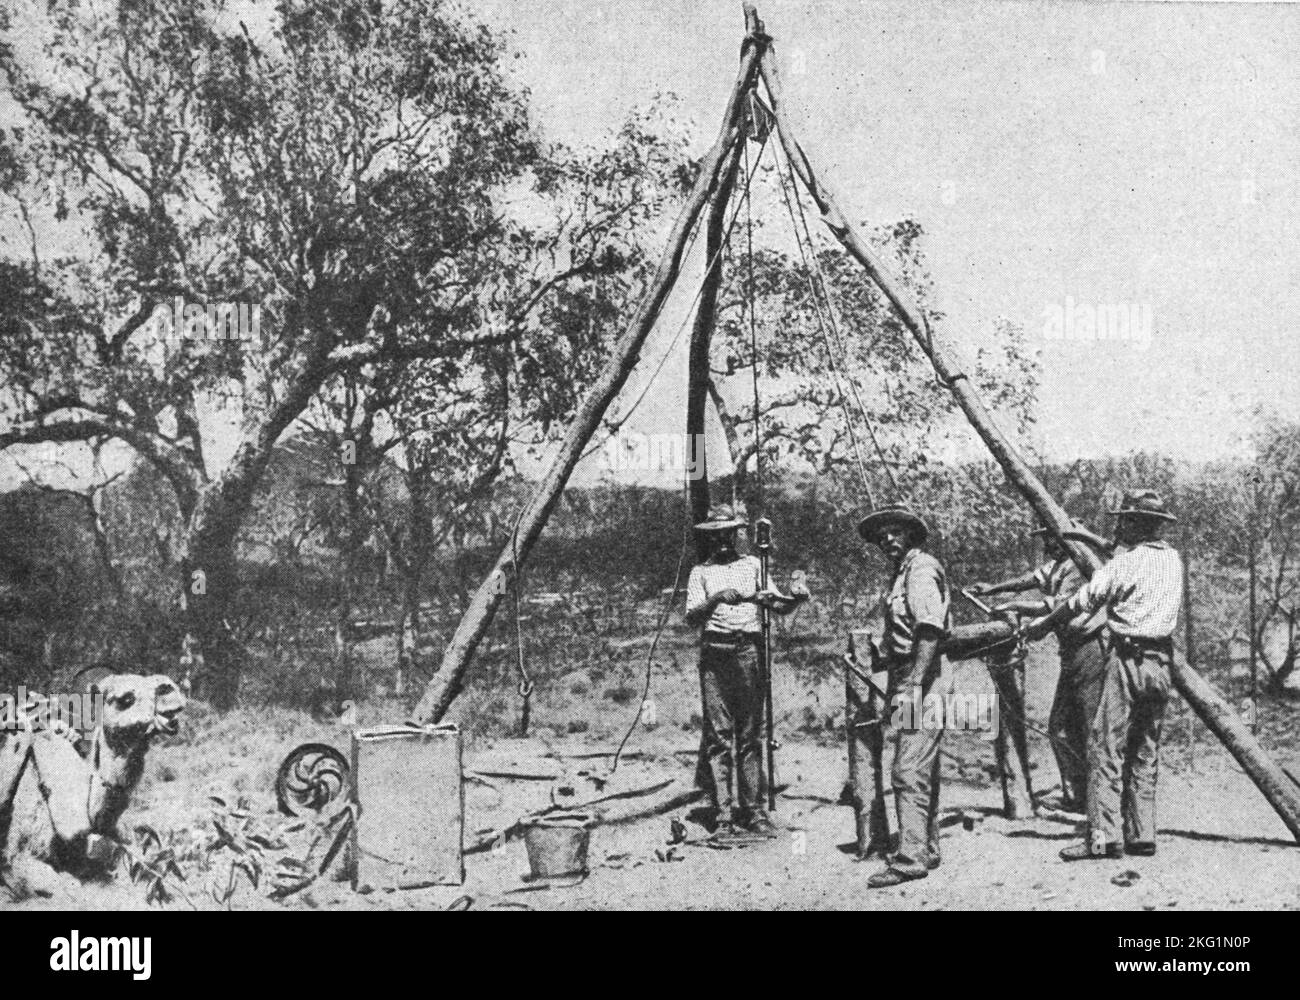 Vintage-Foto um 1900, das Goldsucher zeigt, die einen primitiven Stab und einen Bohrstab verwendeten, um goldhaltiges Gestein im Nordwesten Australiens zu lokalisieren Stockfoto